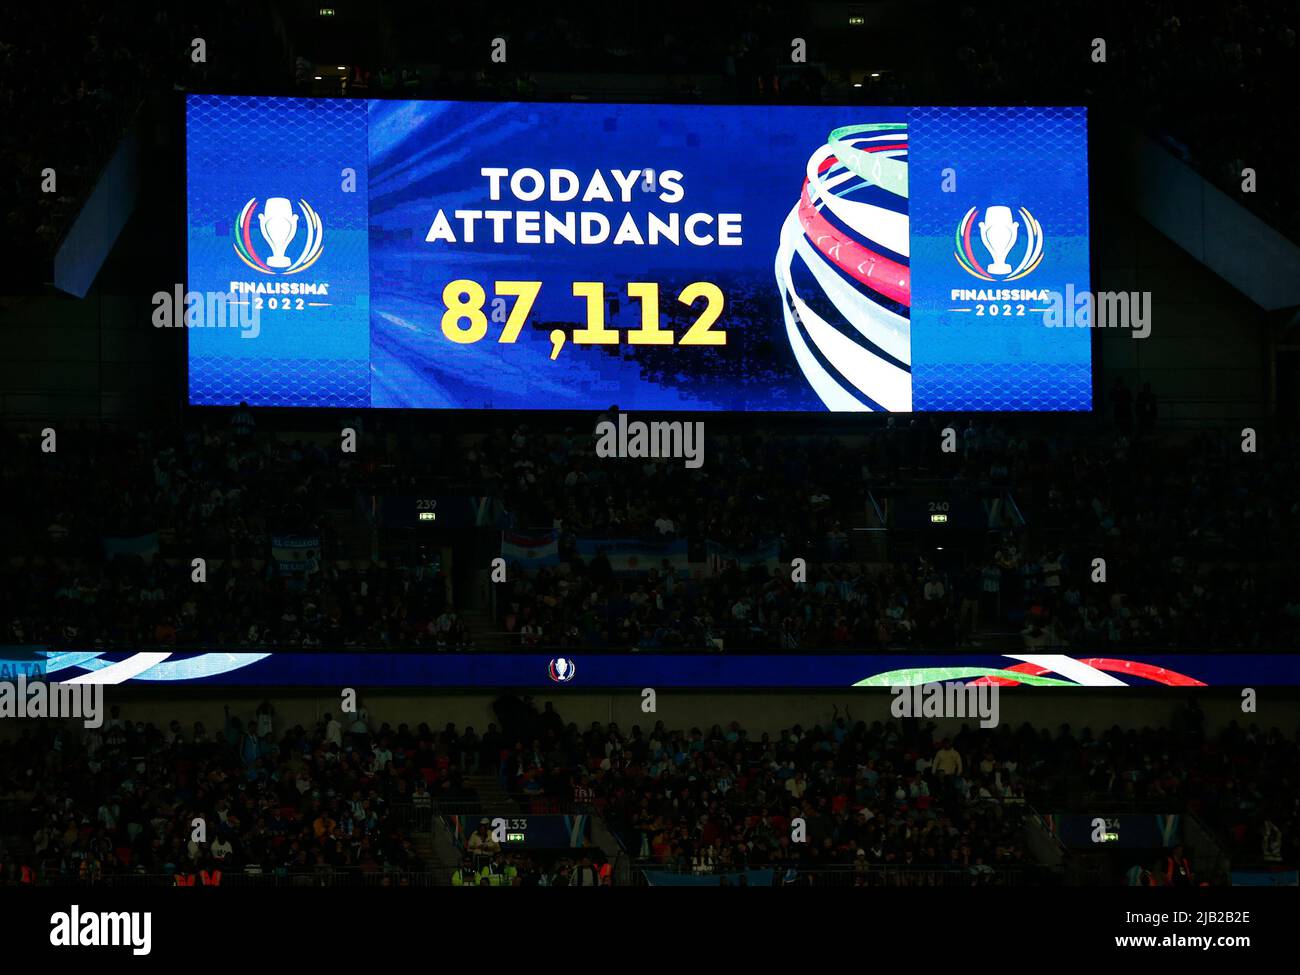 LONDRES, ANGLETERRE - JUIN 01: Tableau de bord montrent la présence de 87112 pendant Finalissima Conmebol - coupe des champions de l'UEFA entre l'Italie et l'Argentine à Banque D'Images